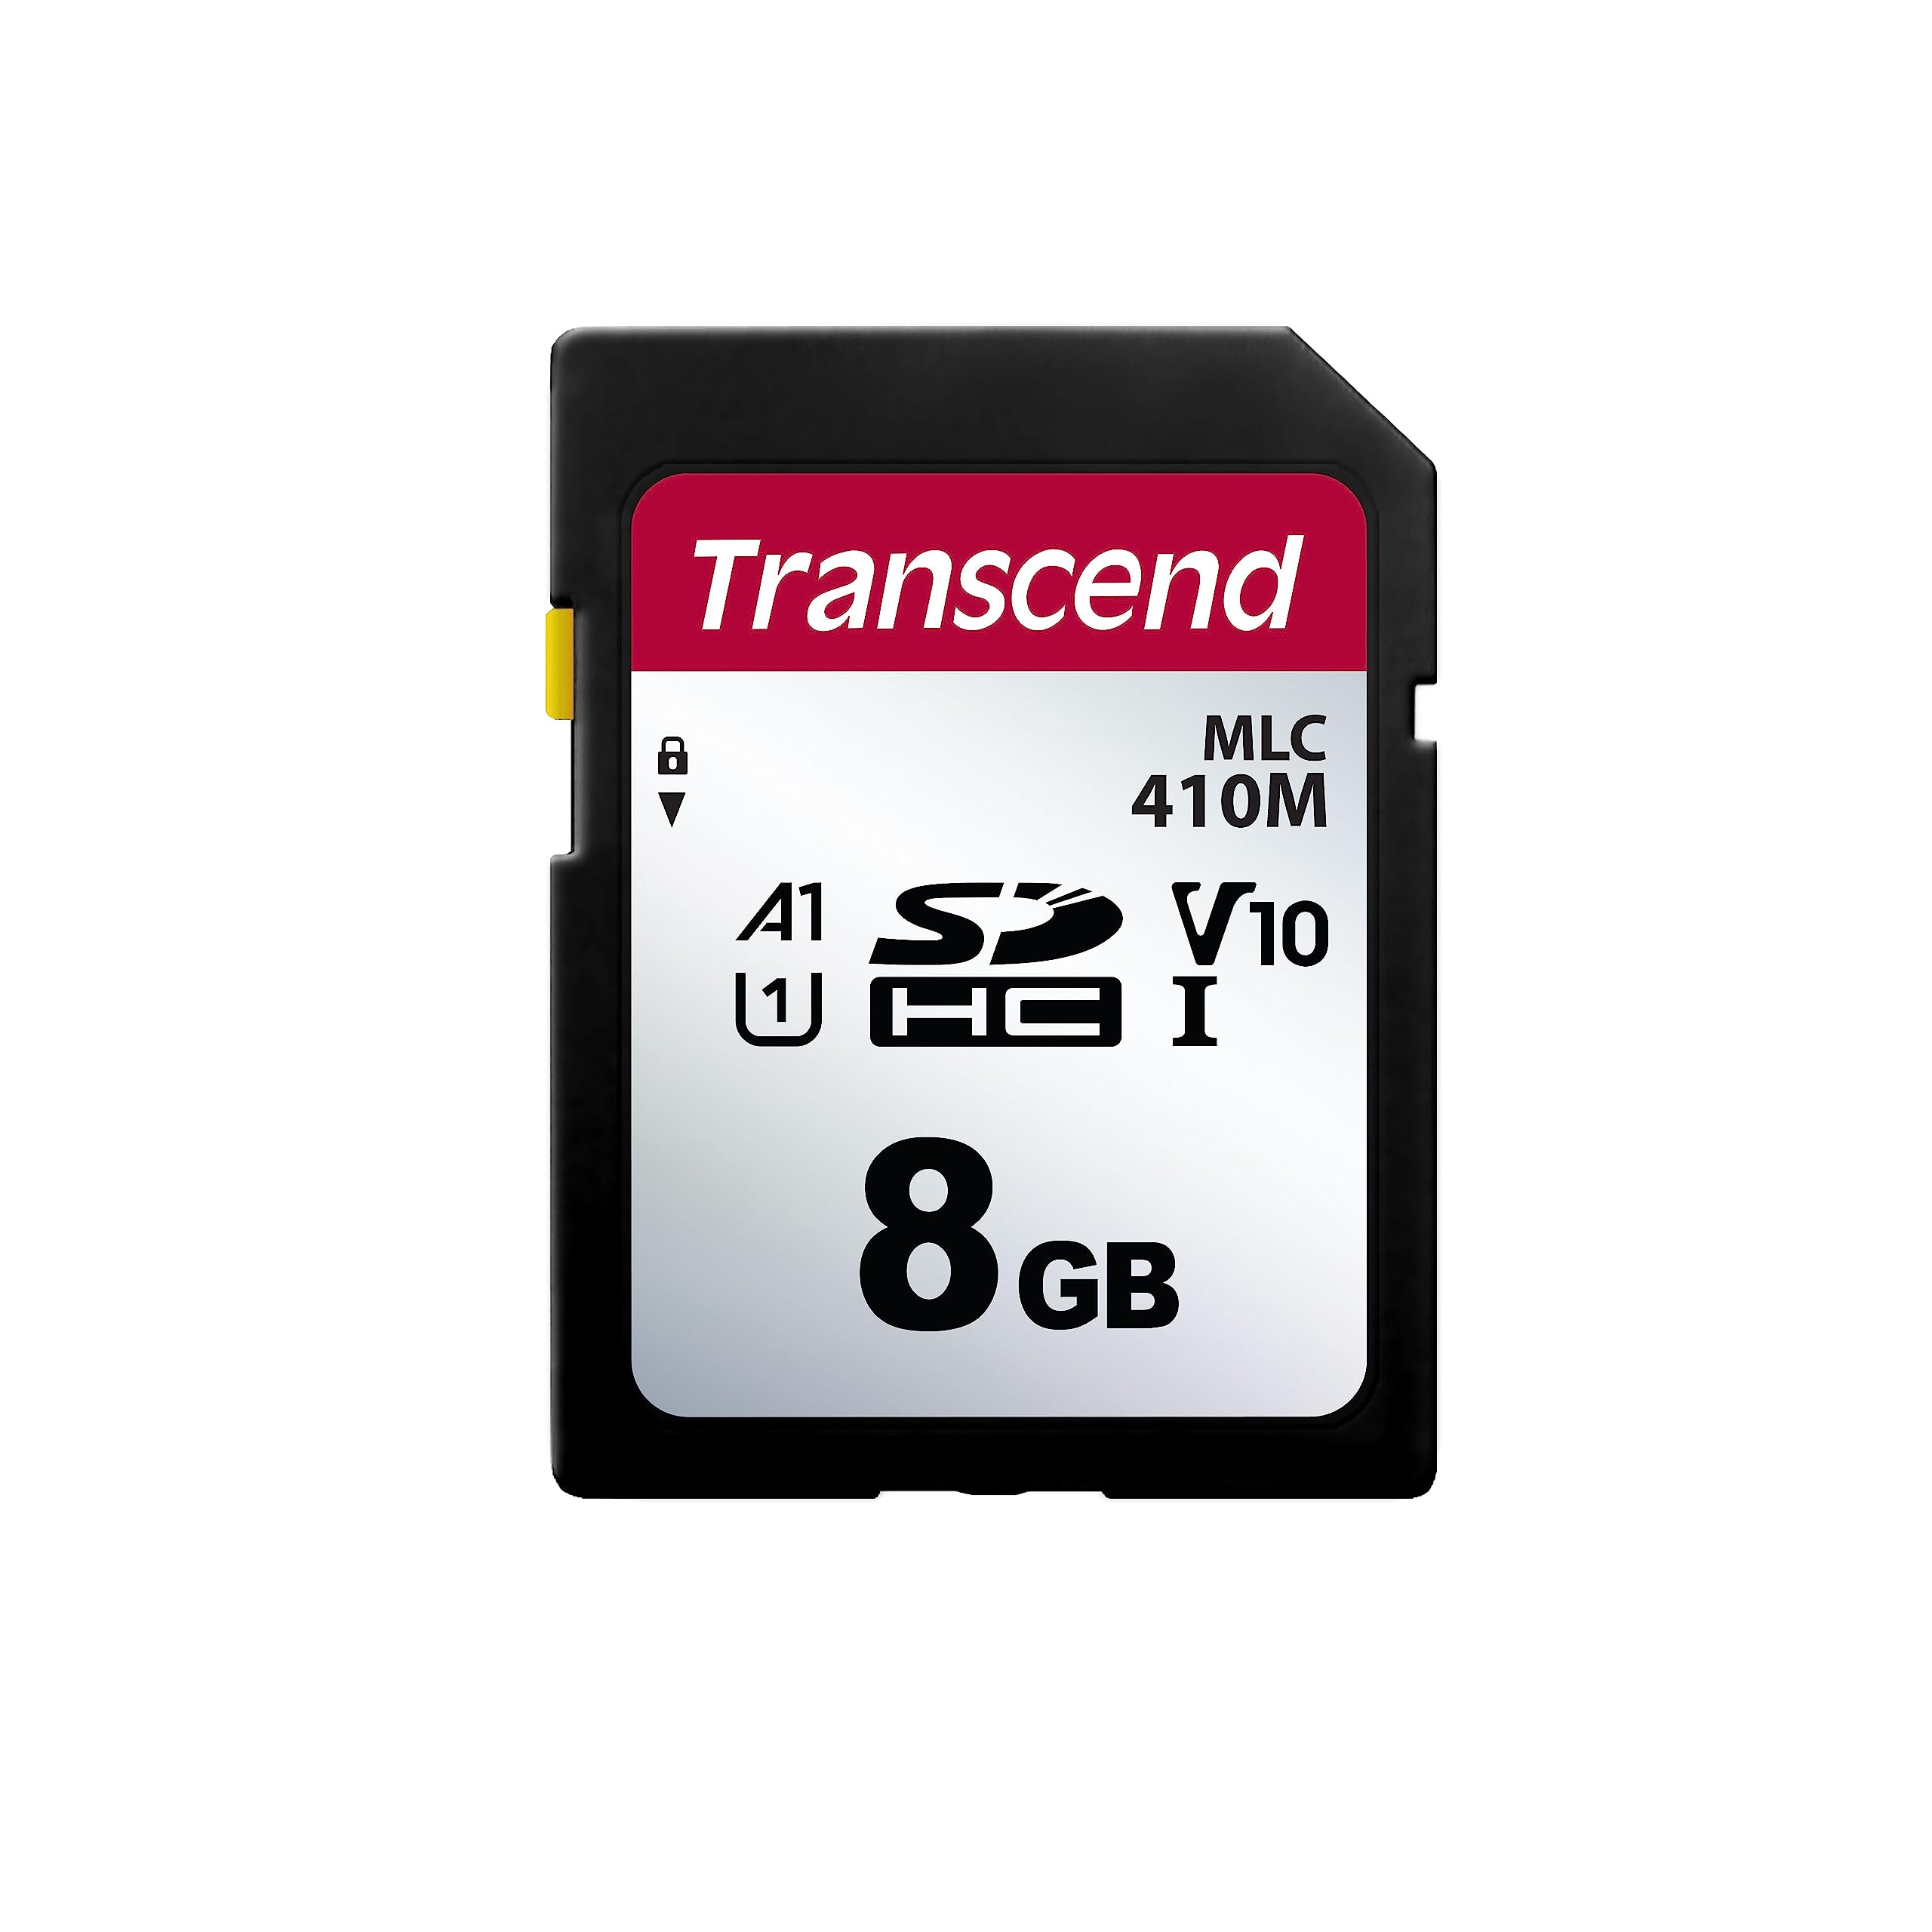 トランセンドジャパン Transcend法人(ビジネス)向け 業務用/産業用SDカード 8GB UHS-I V10 A1 Samsung製2D (2bit)MLC NAND採用 高耐久 2